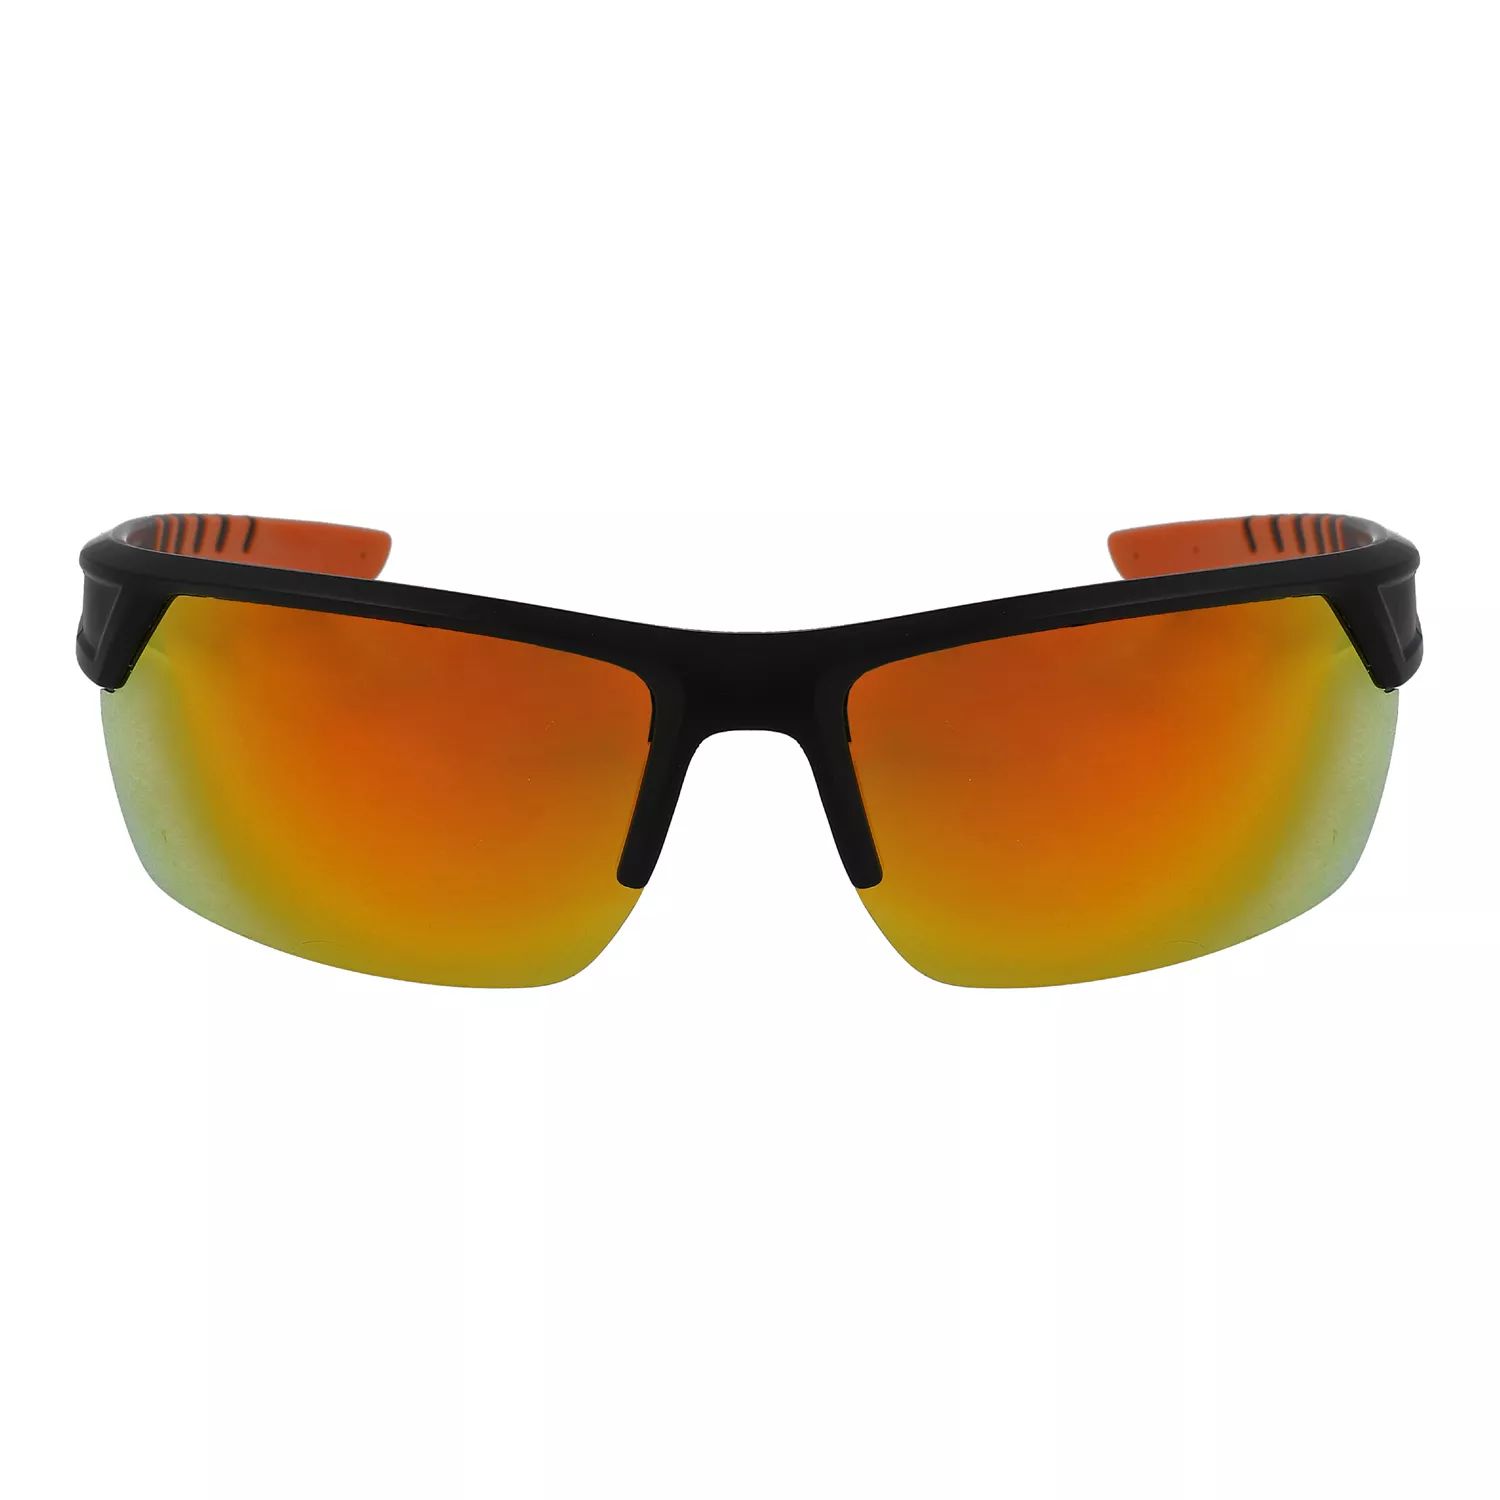 Мужские модифицированные прямоугольные поляризованные солнцезащитные очки Columbia Peak Racer